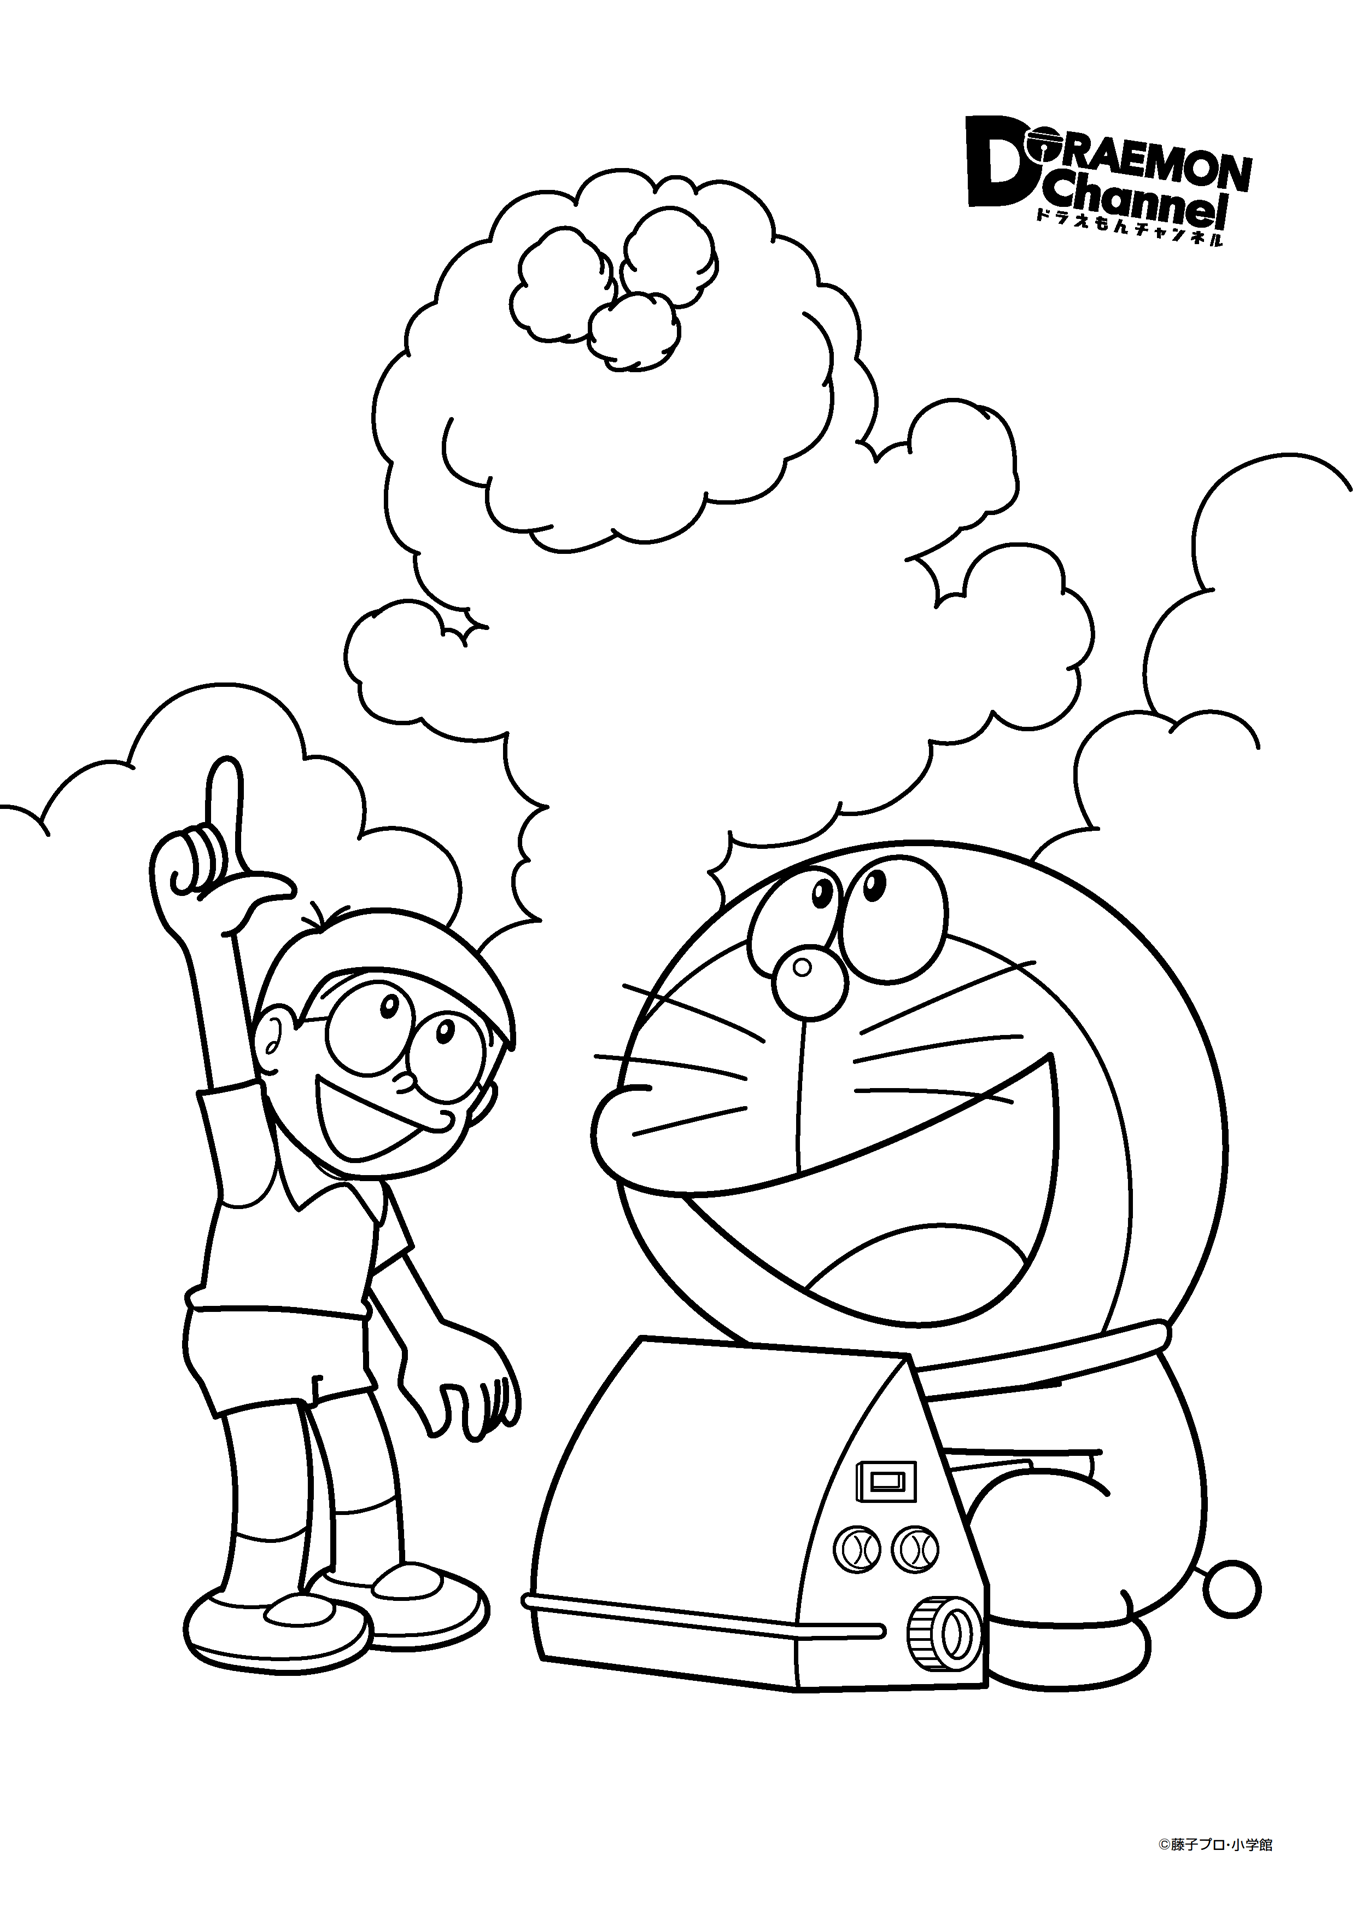 Tranh tô màu Doremon, Nobita và tạo hình đám mây